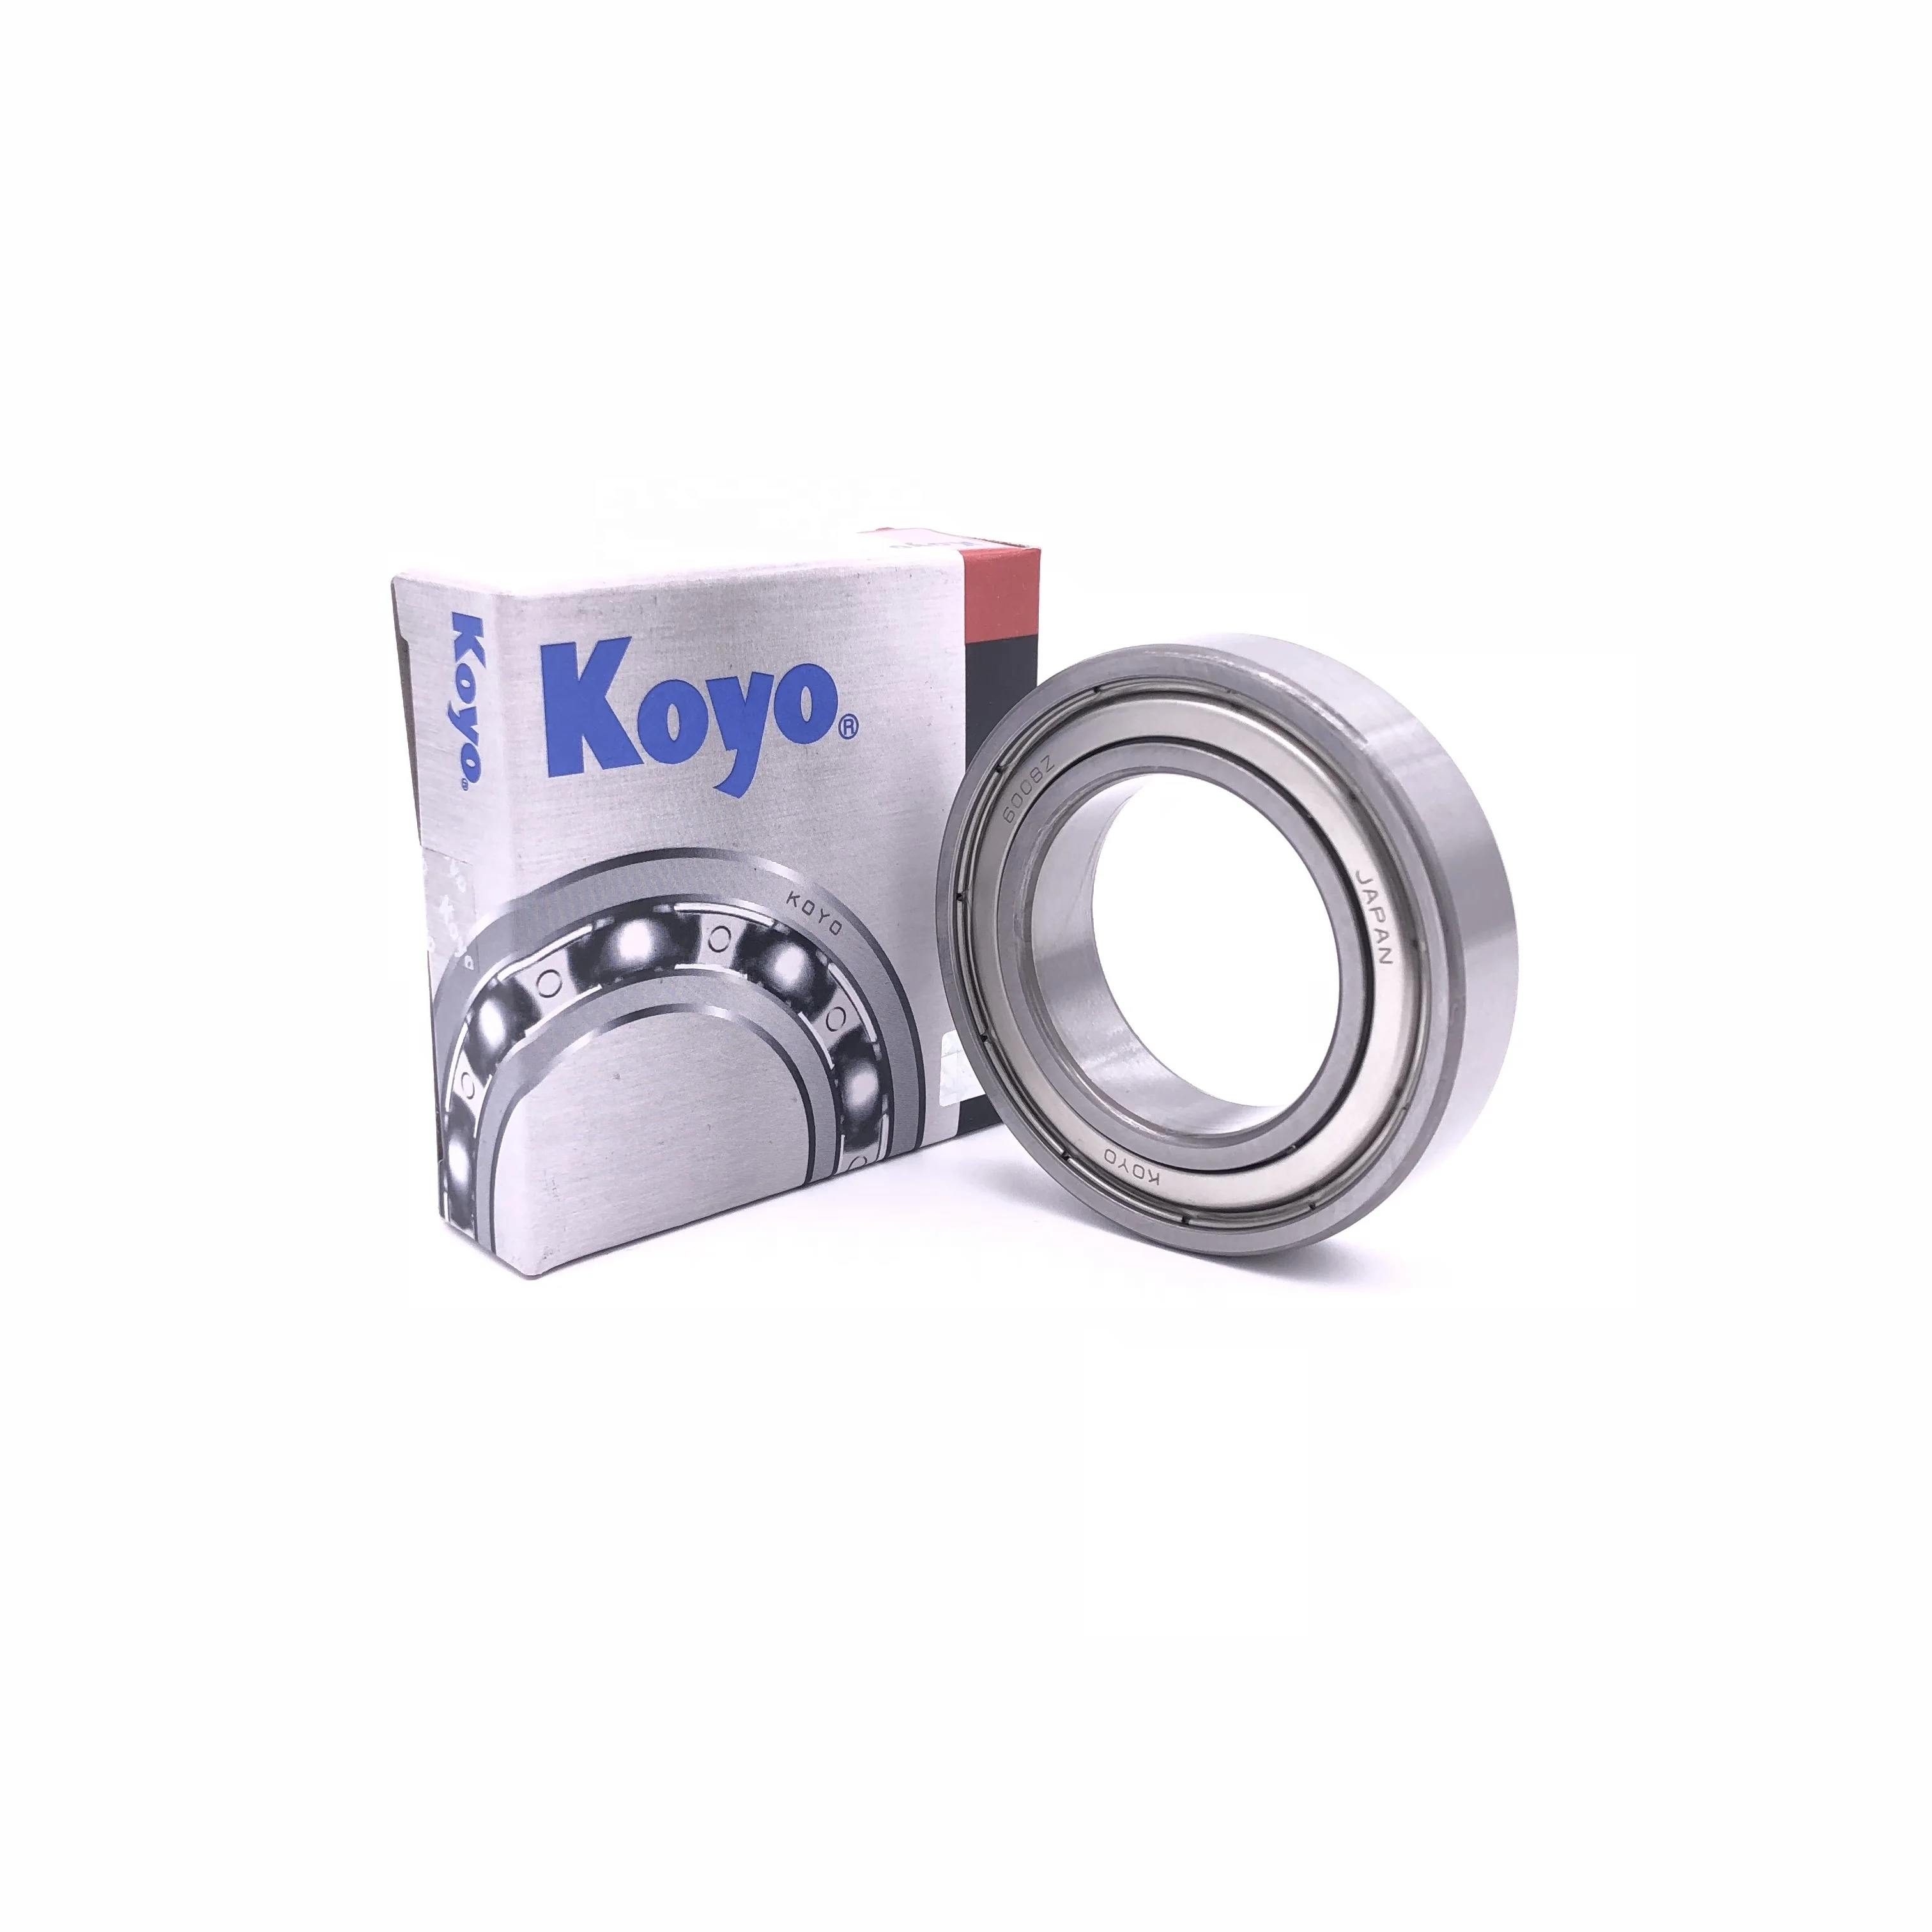 High speed and high torque KOYO 6000 deep groove ball bearing